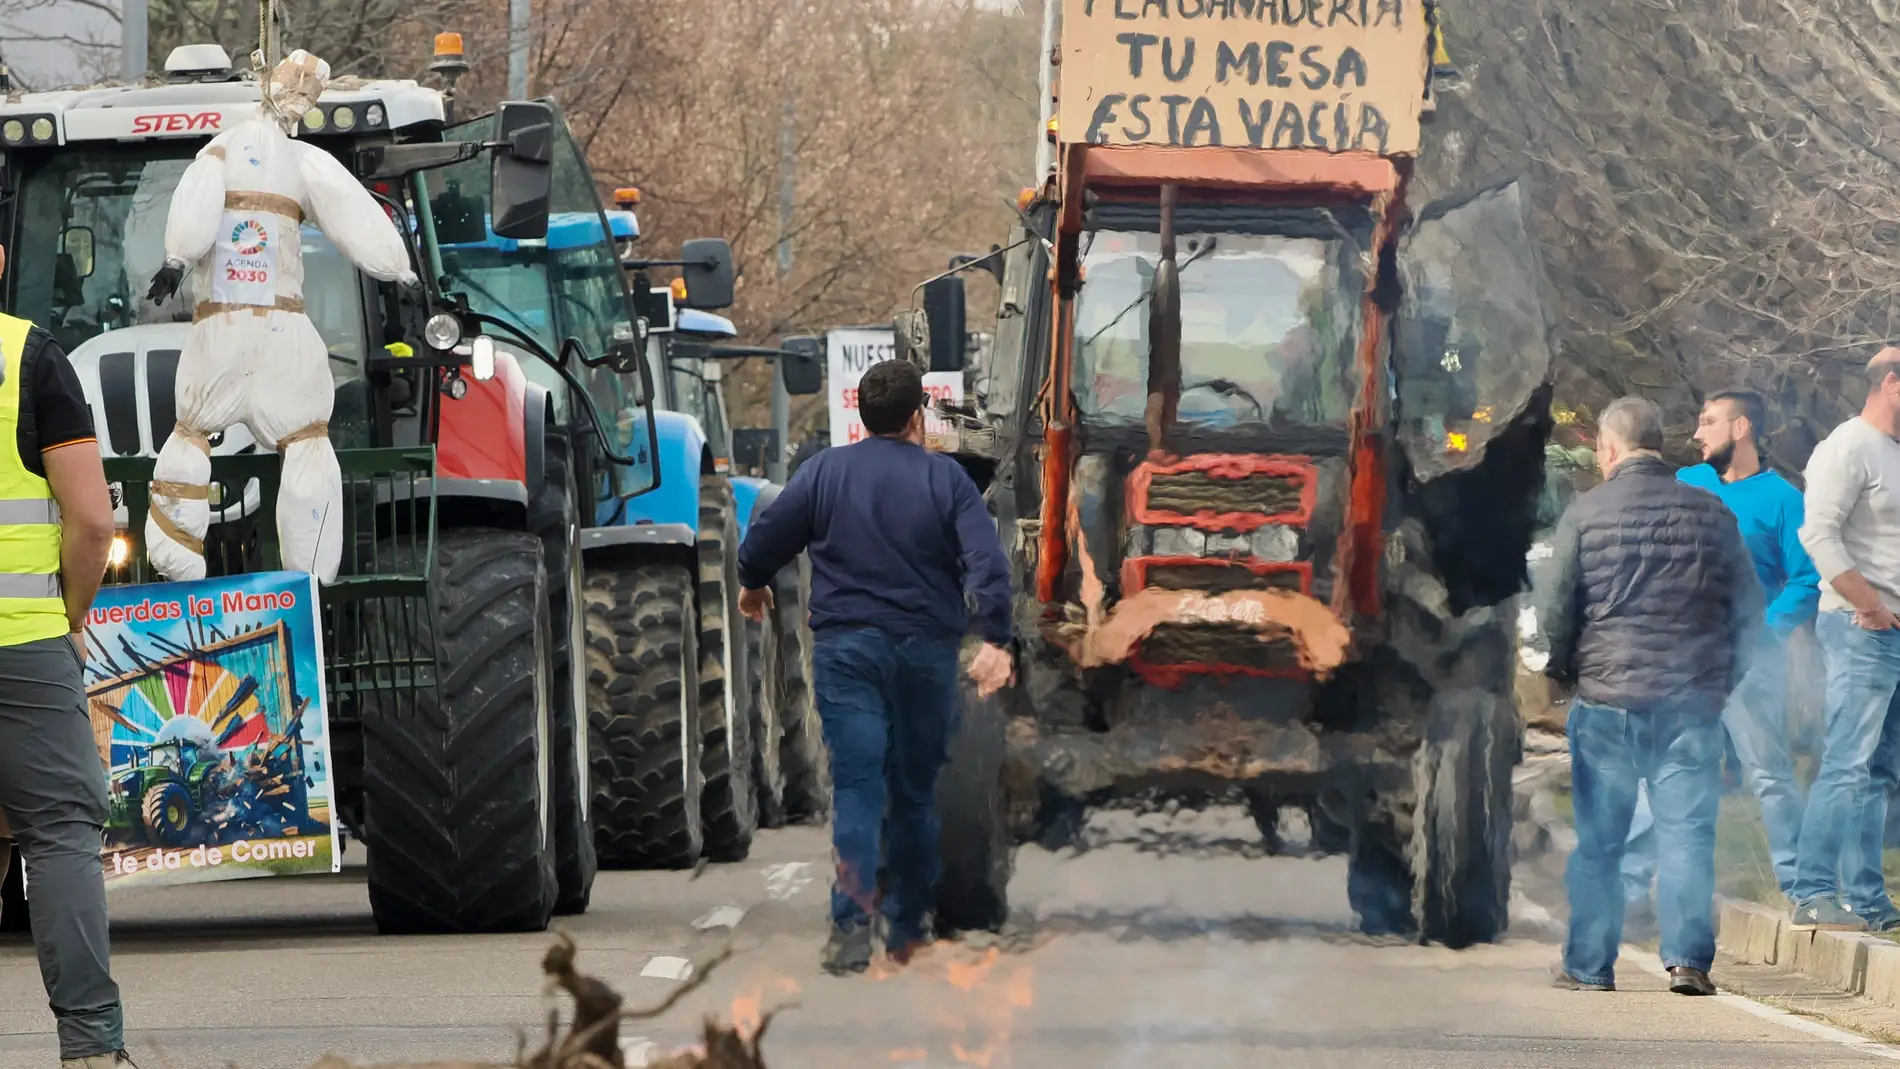 Huelga de agricultores en directo: cortes de carretera, movilizaciones y últimas noticias